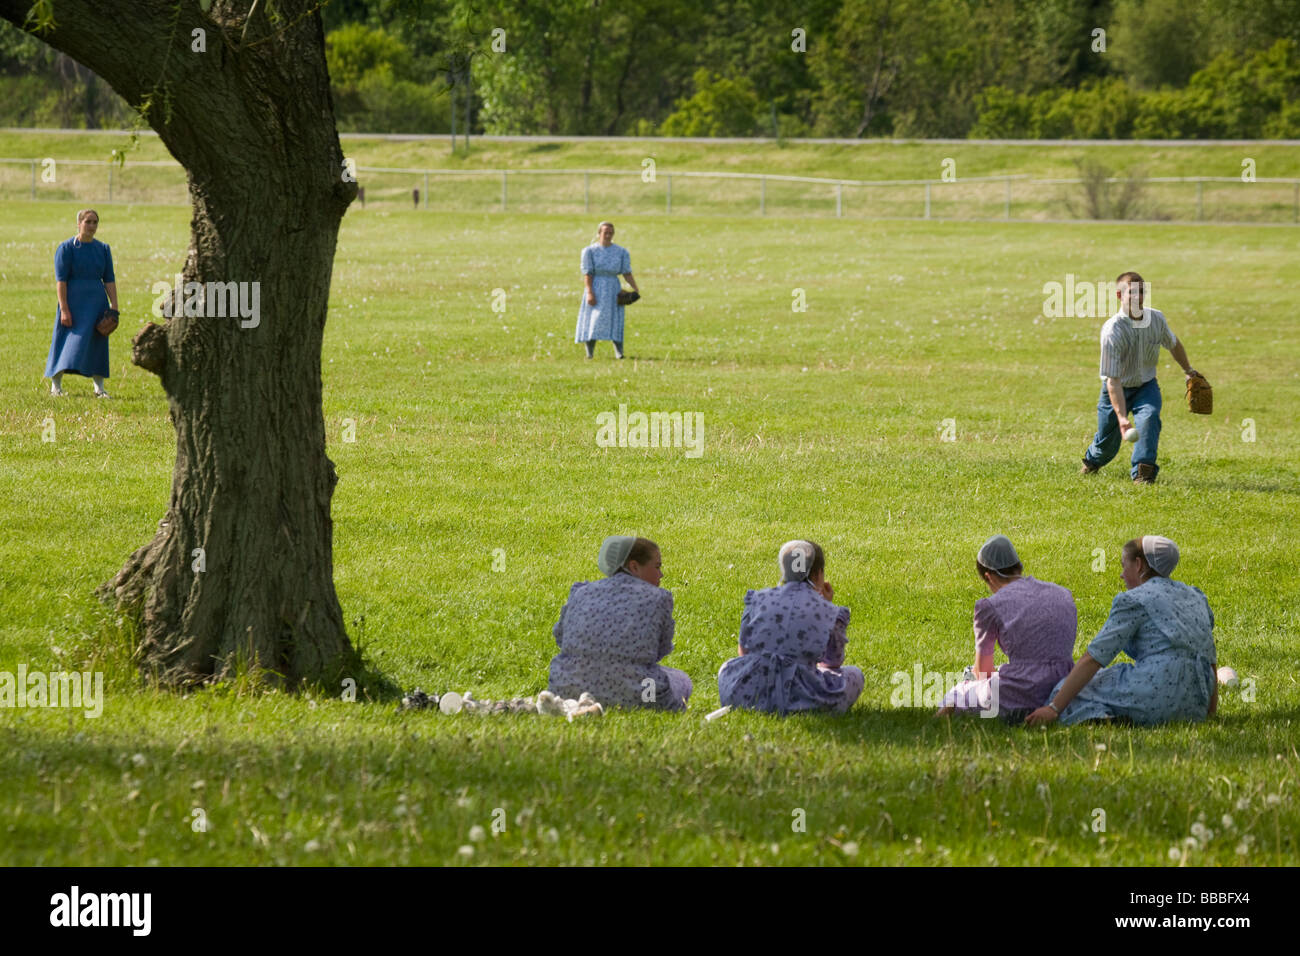 Les jeunes hommes et femmes mennonites jouer softball Dimanche au parc Genève New York Ontario Comté Finger Lakes Banque D'Images